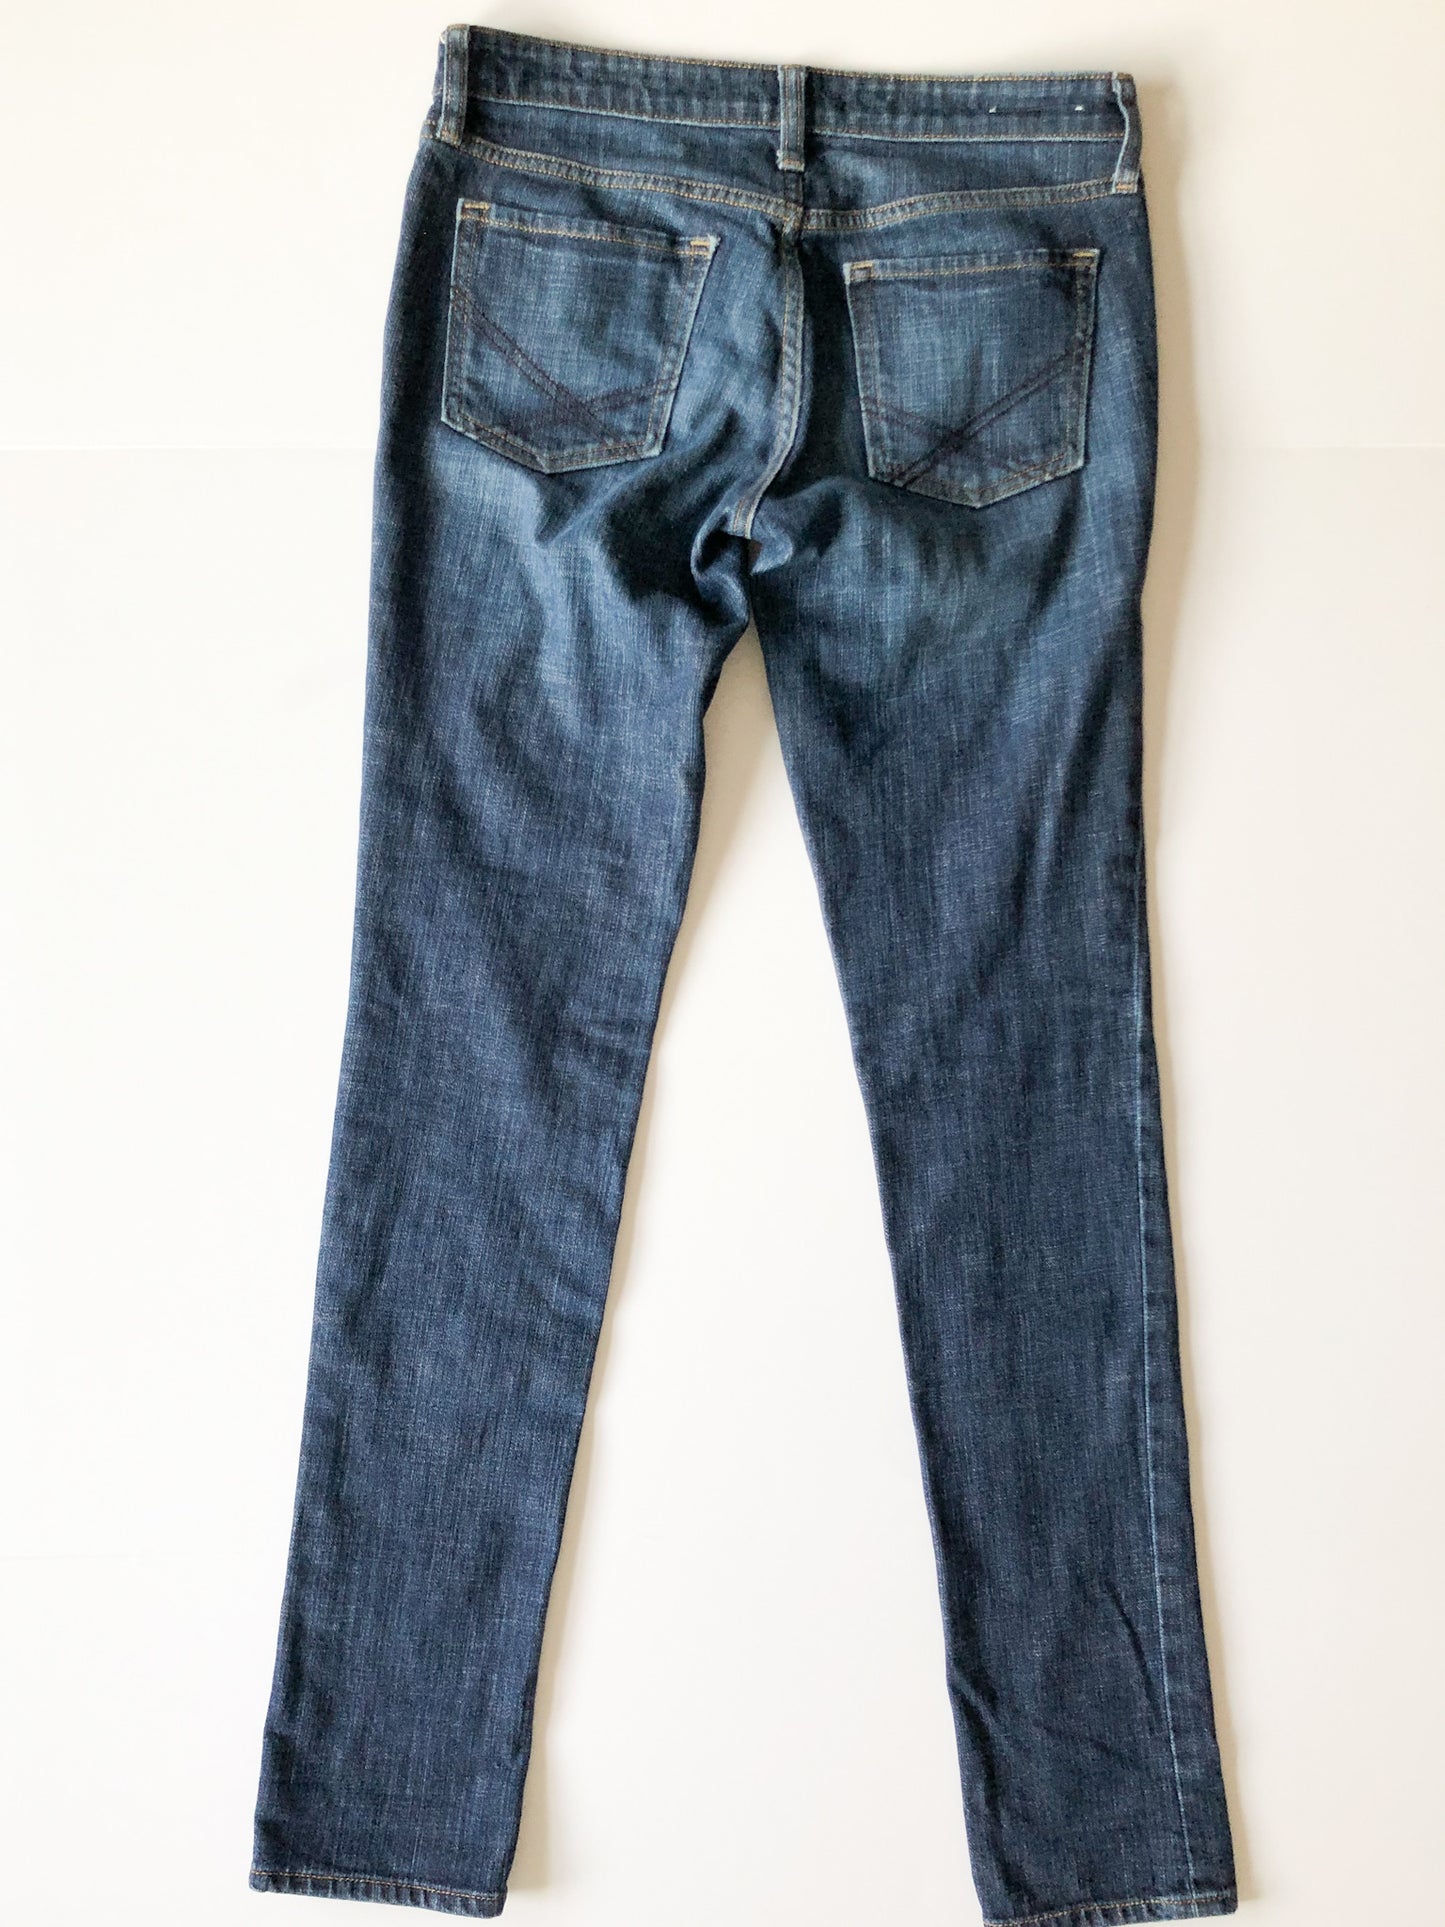 GAP Premium Skinny Dark Wash Skinny Jeans - Size 2/26